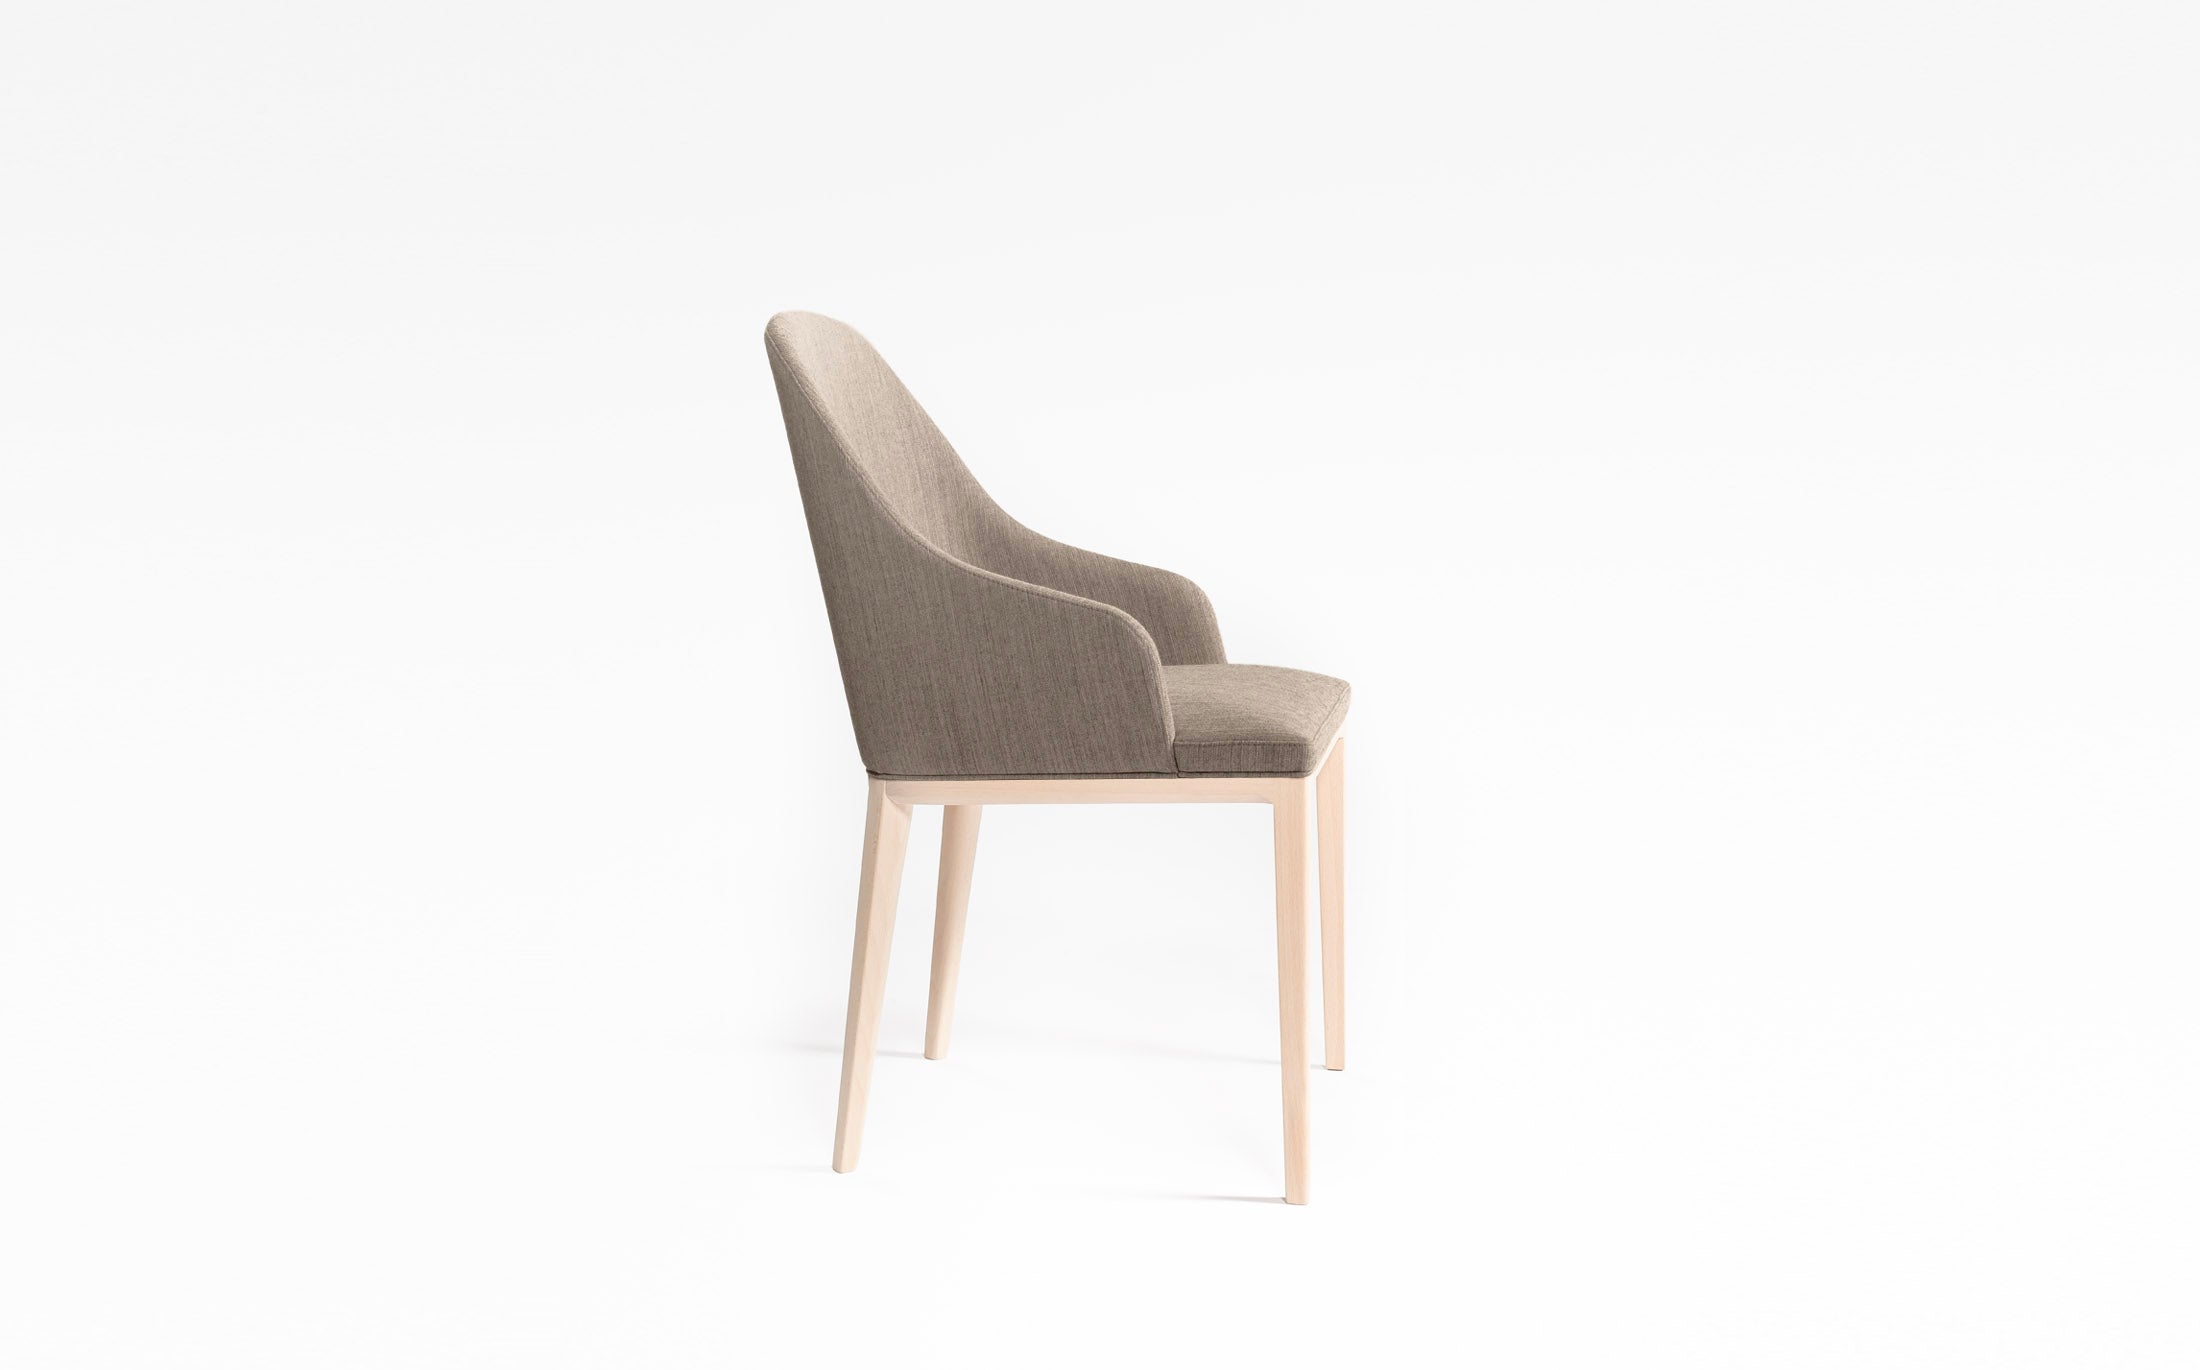 Philip half armchair #Seat materials_fabric1 riff 05/99